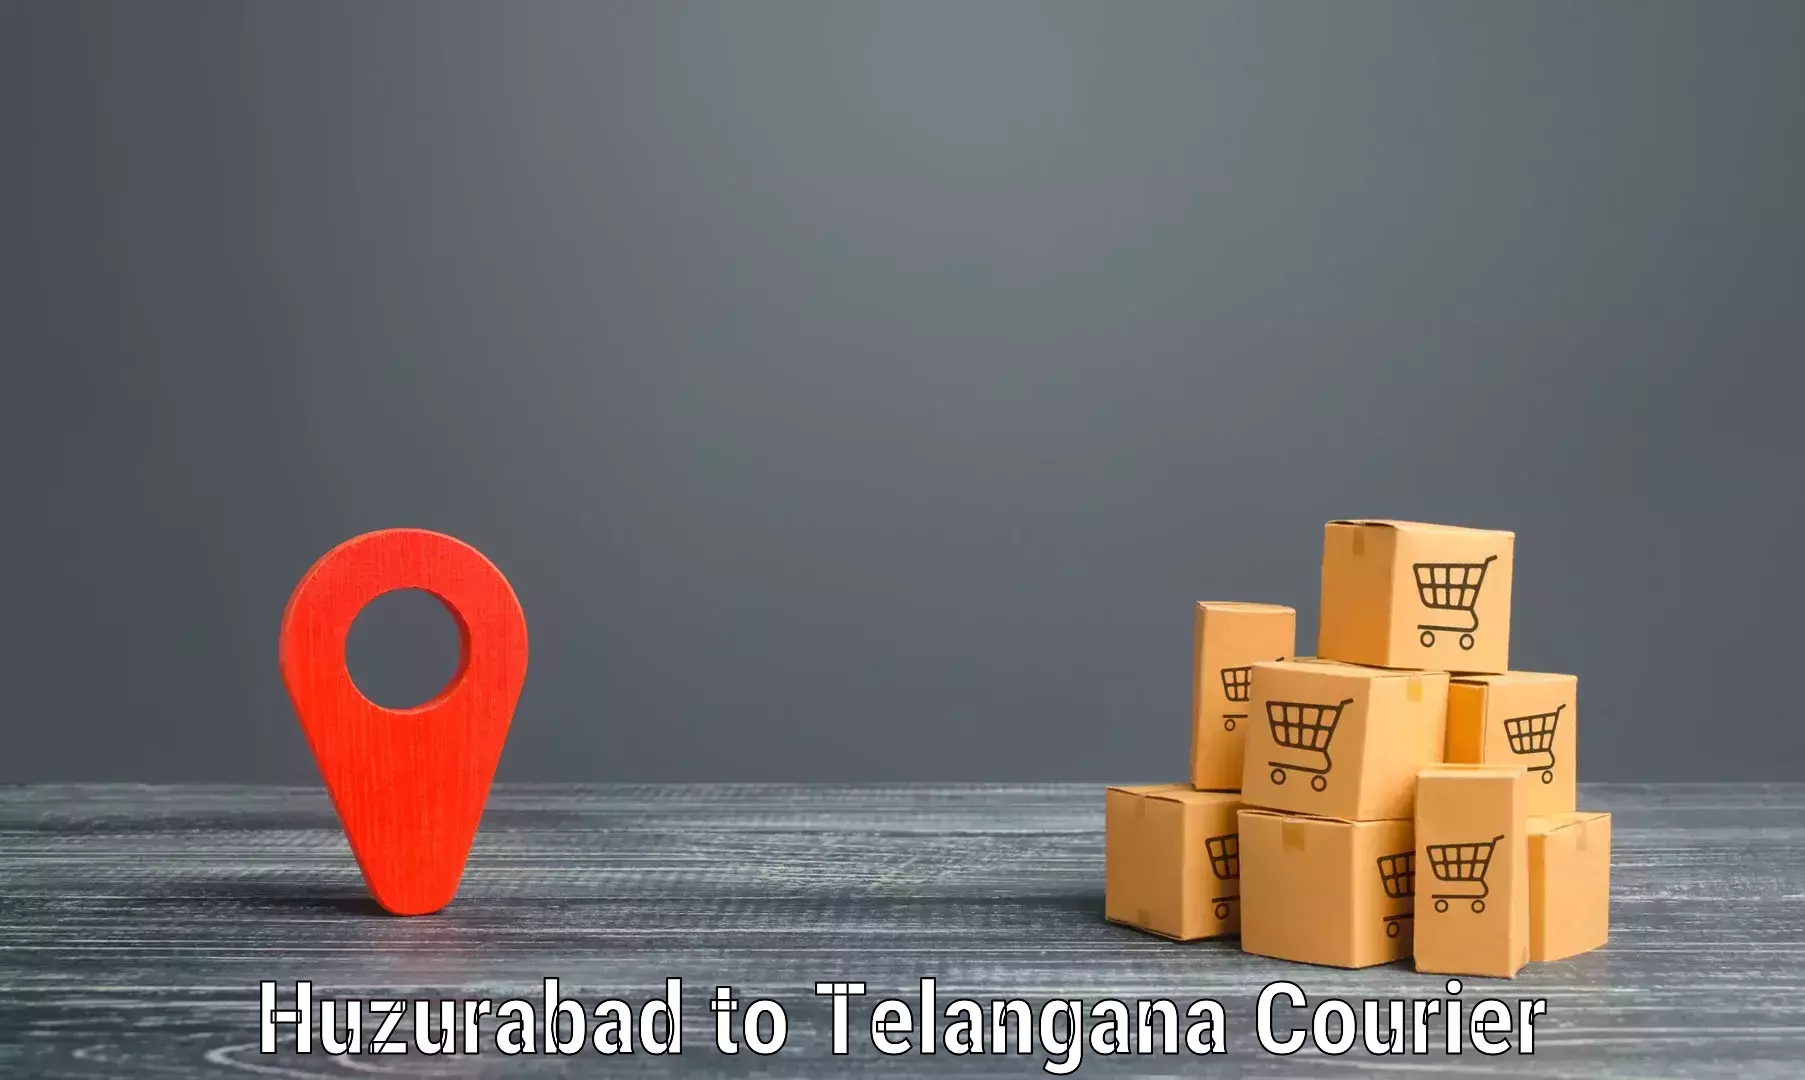 Express courier capabilities Huzurabad to Wanaparthy